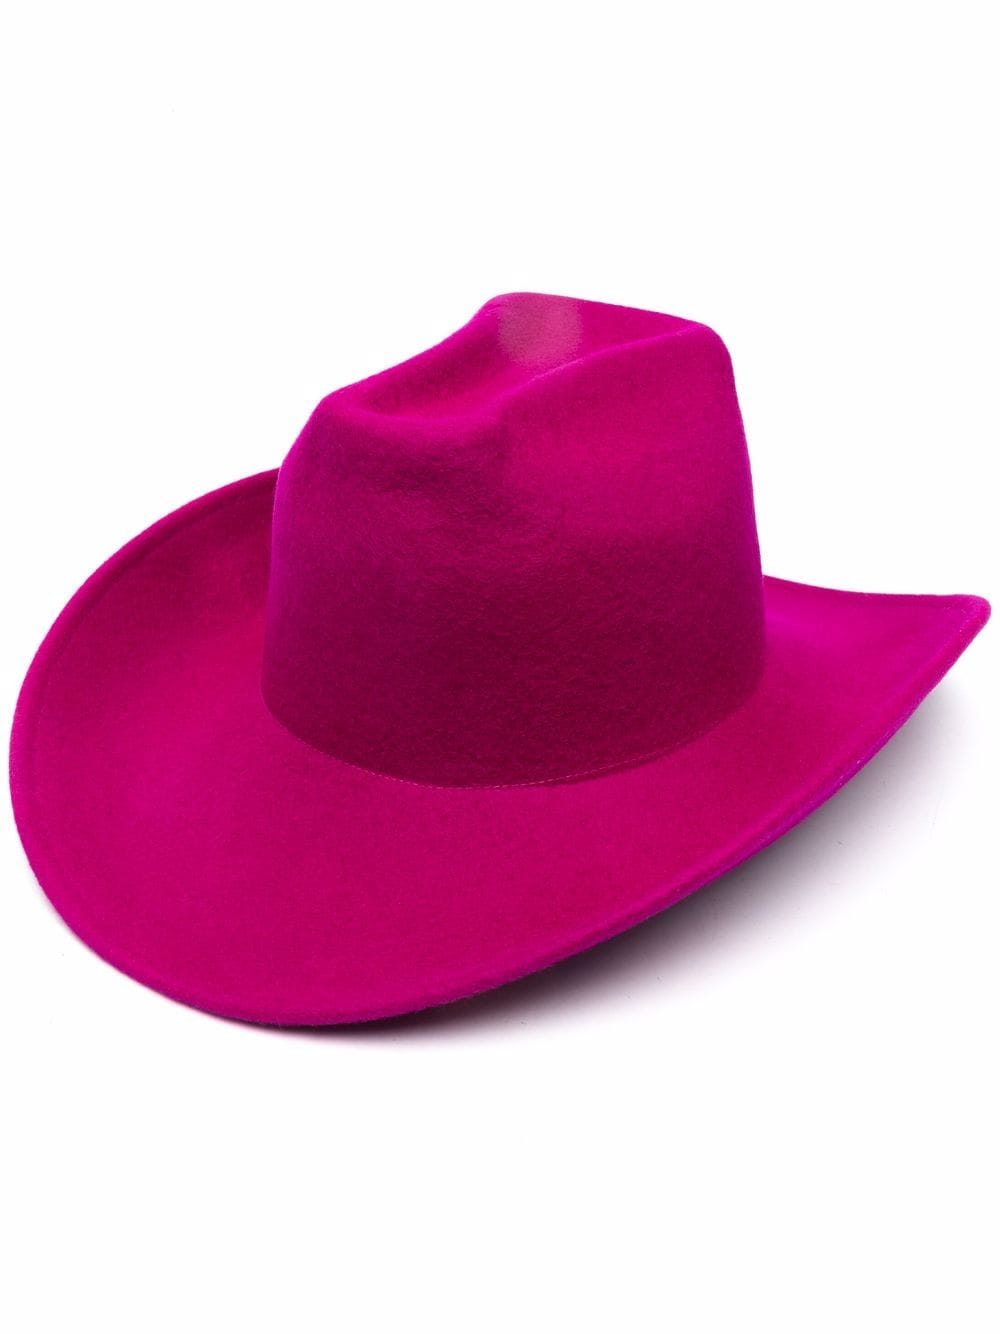 The Attico Pink Cowboy Hat